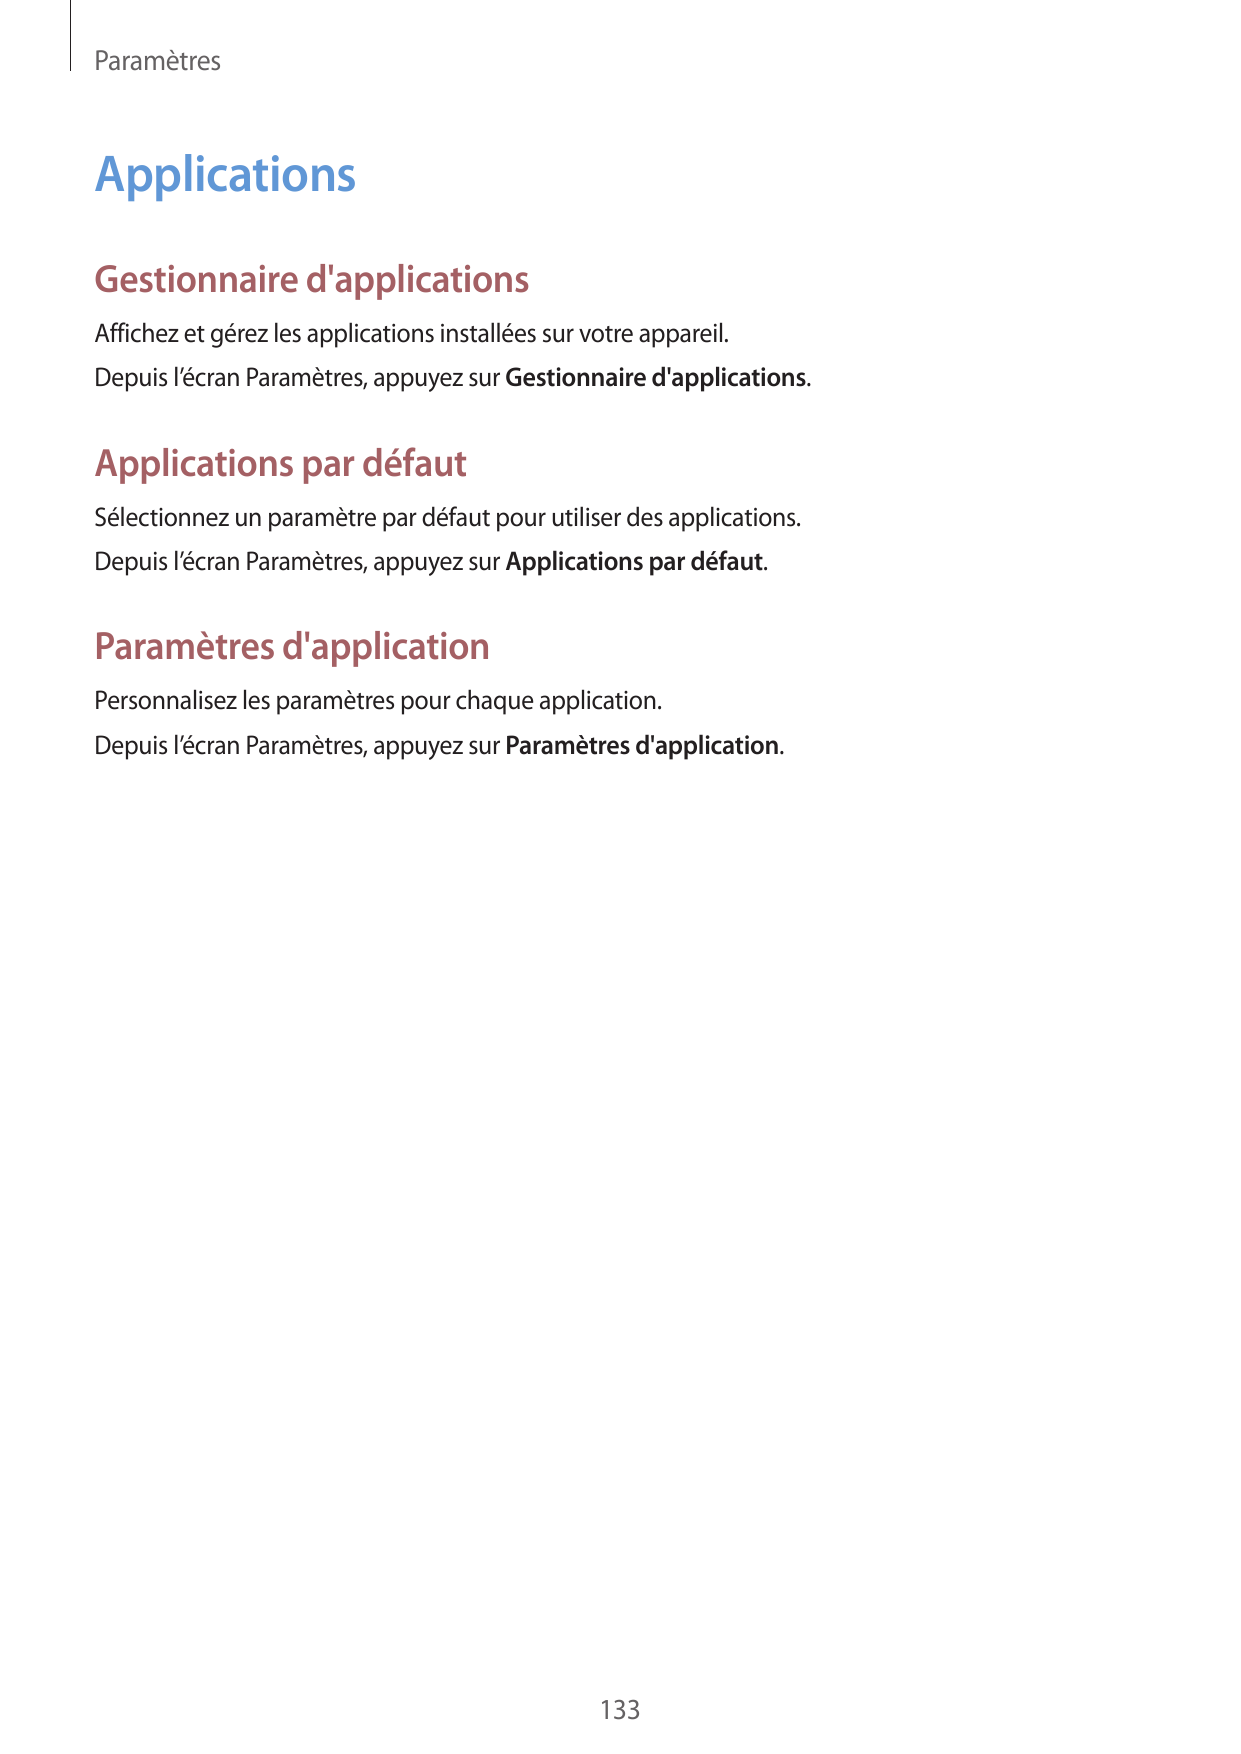 ParamètresApplicationsGestionnaire d'applicationsAffichez et gérez les applications installées sur votre appareil.Depuis l’écran